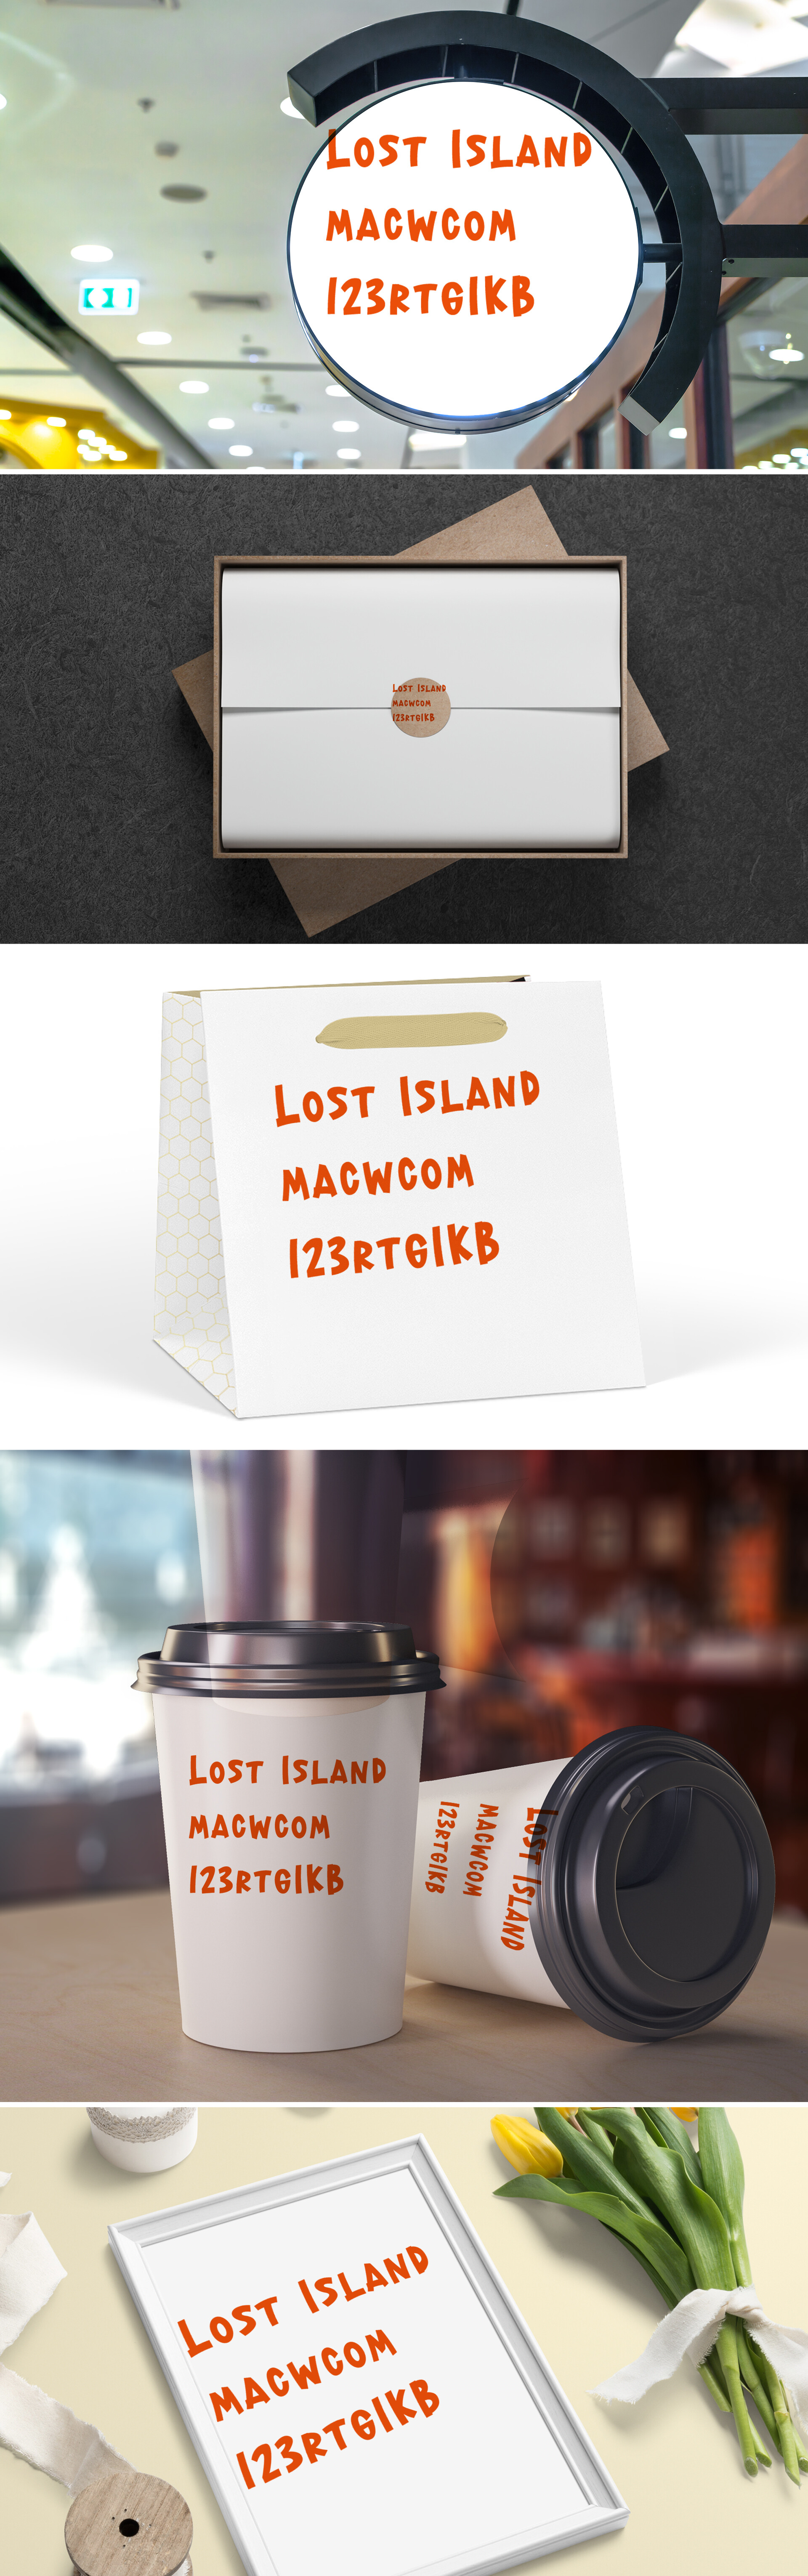 Lost Island夏季显示字体